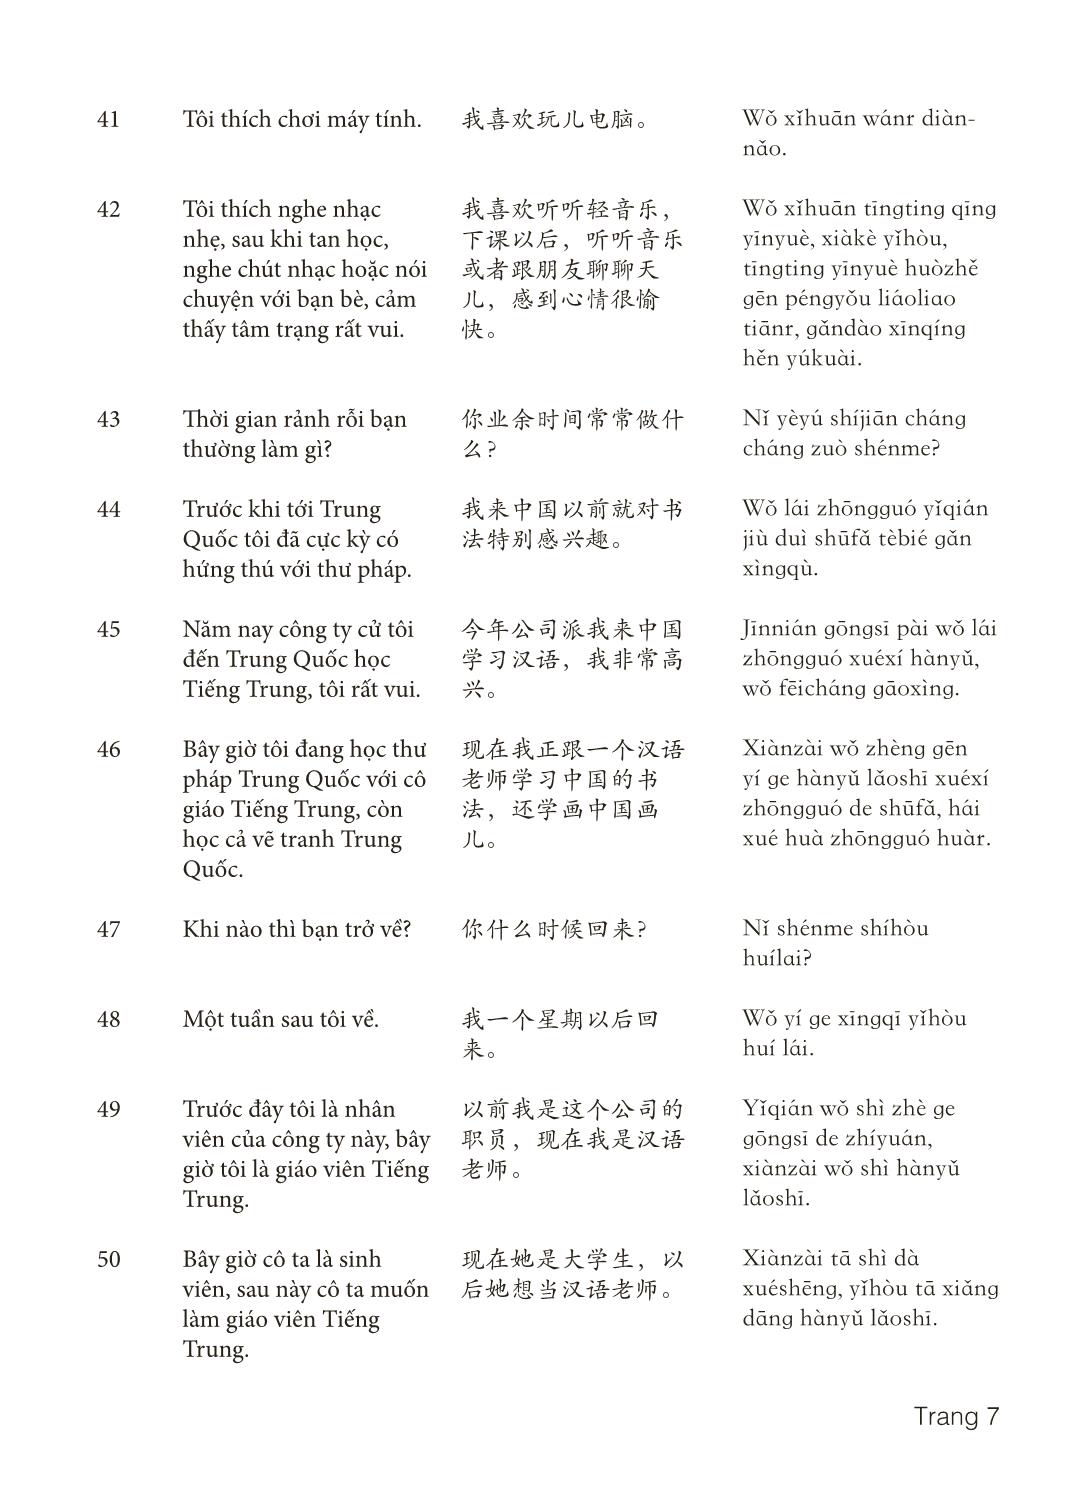 3000 Câu đàm thoại tiếng Hoa - Phần 6 trang 7